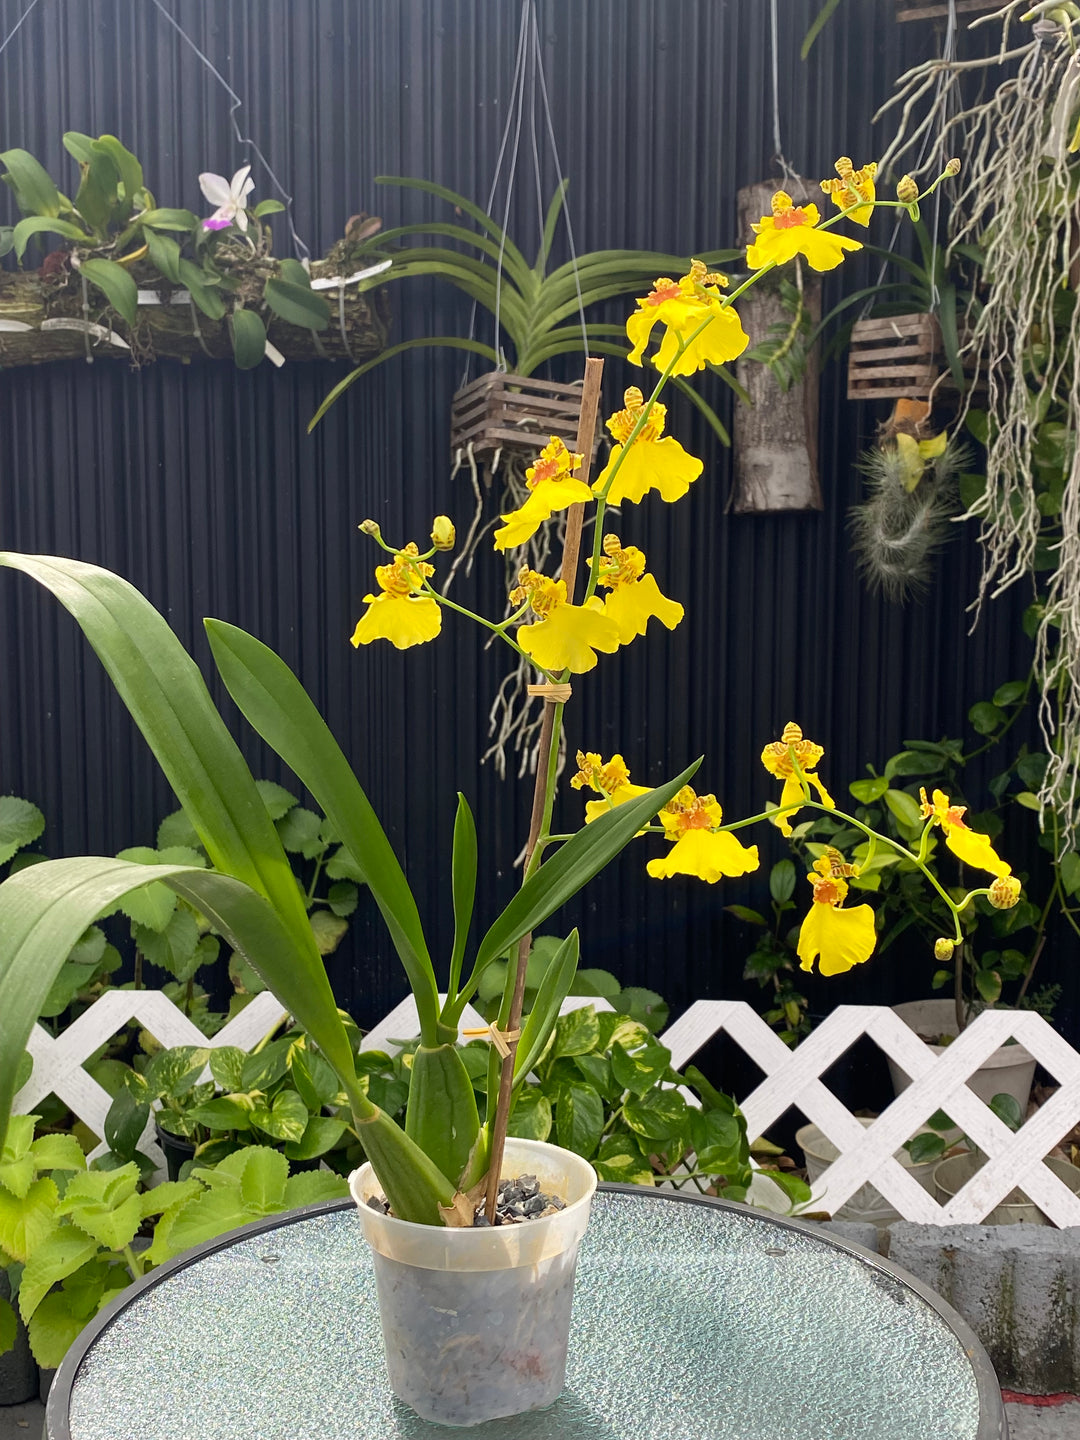 Oncidium Orchids